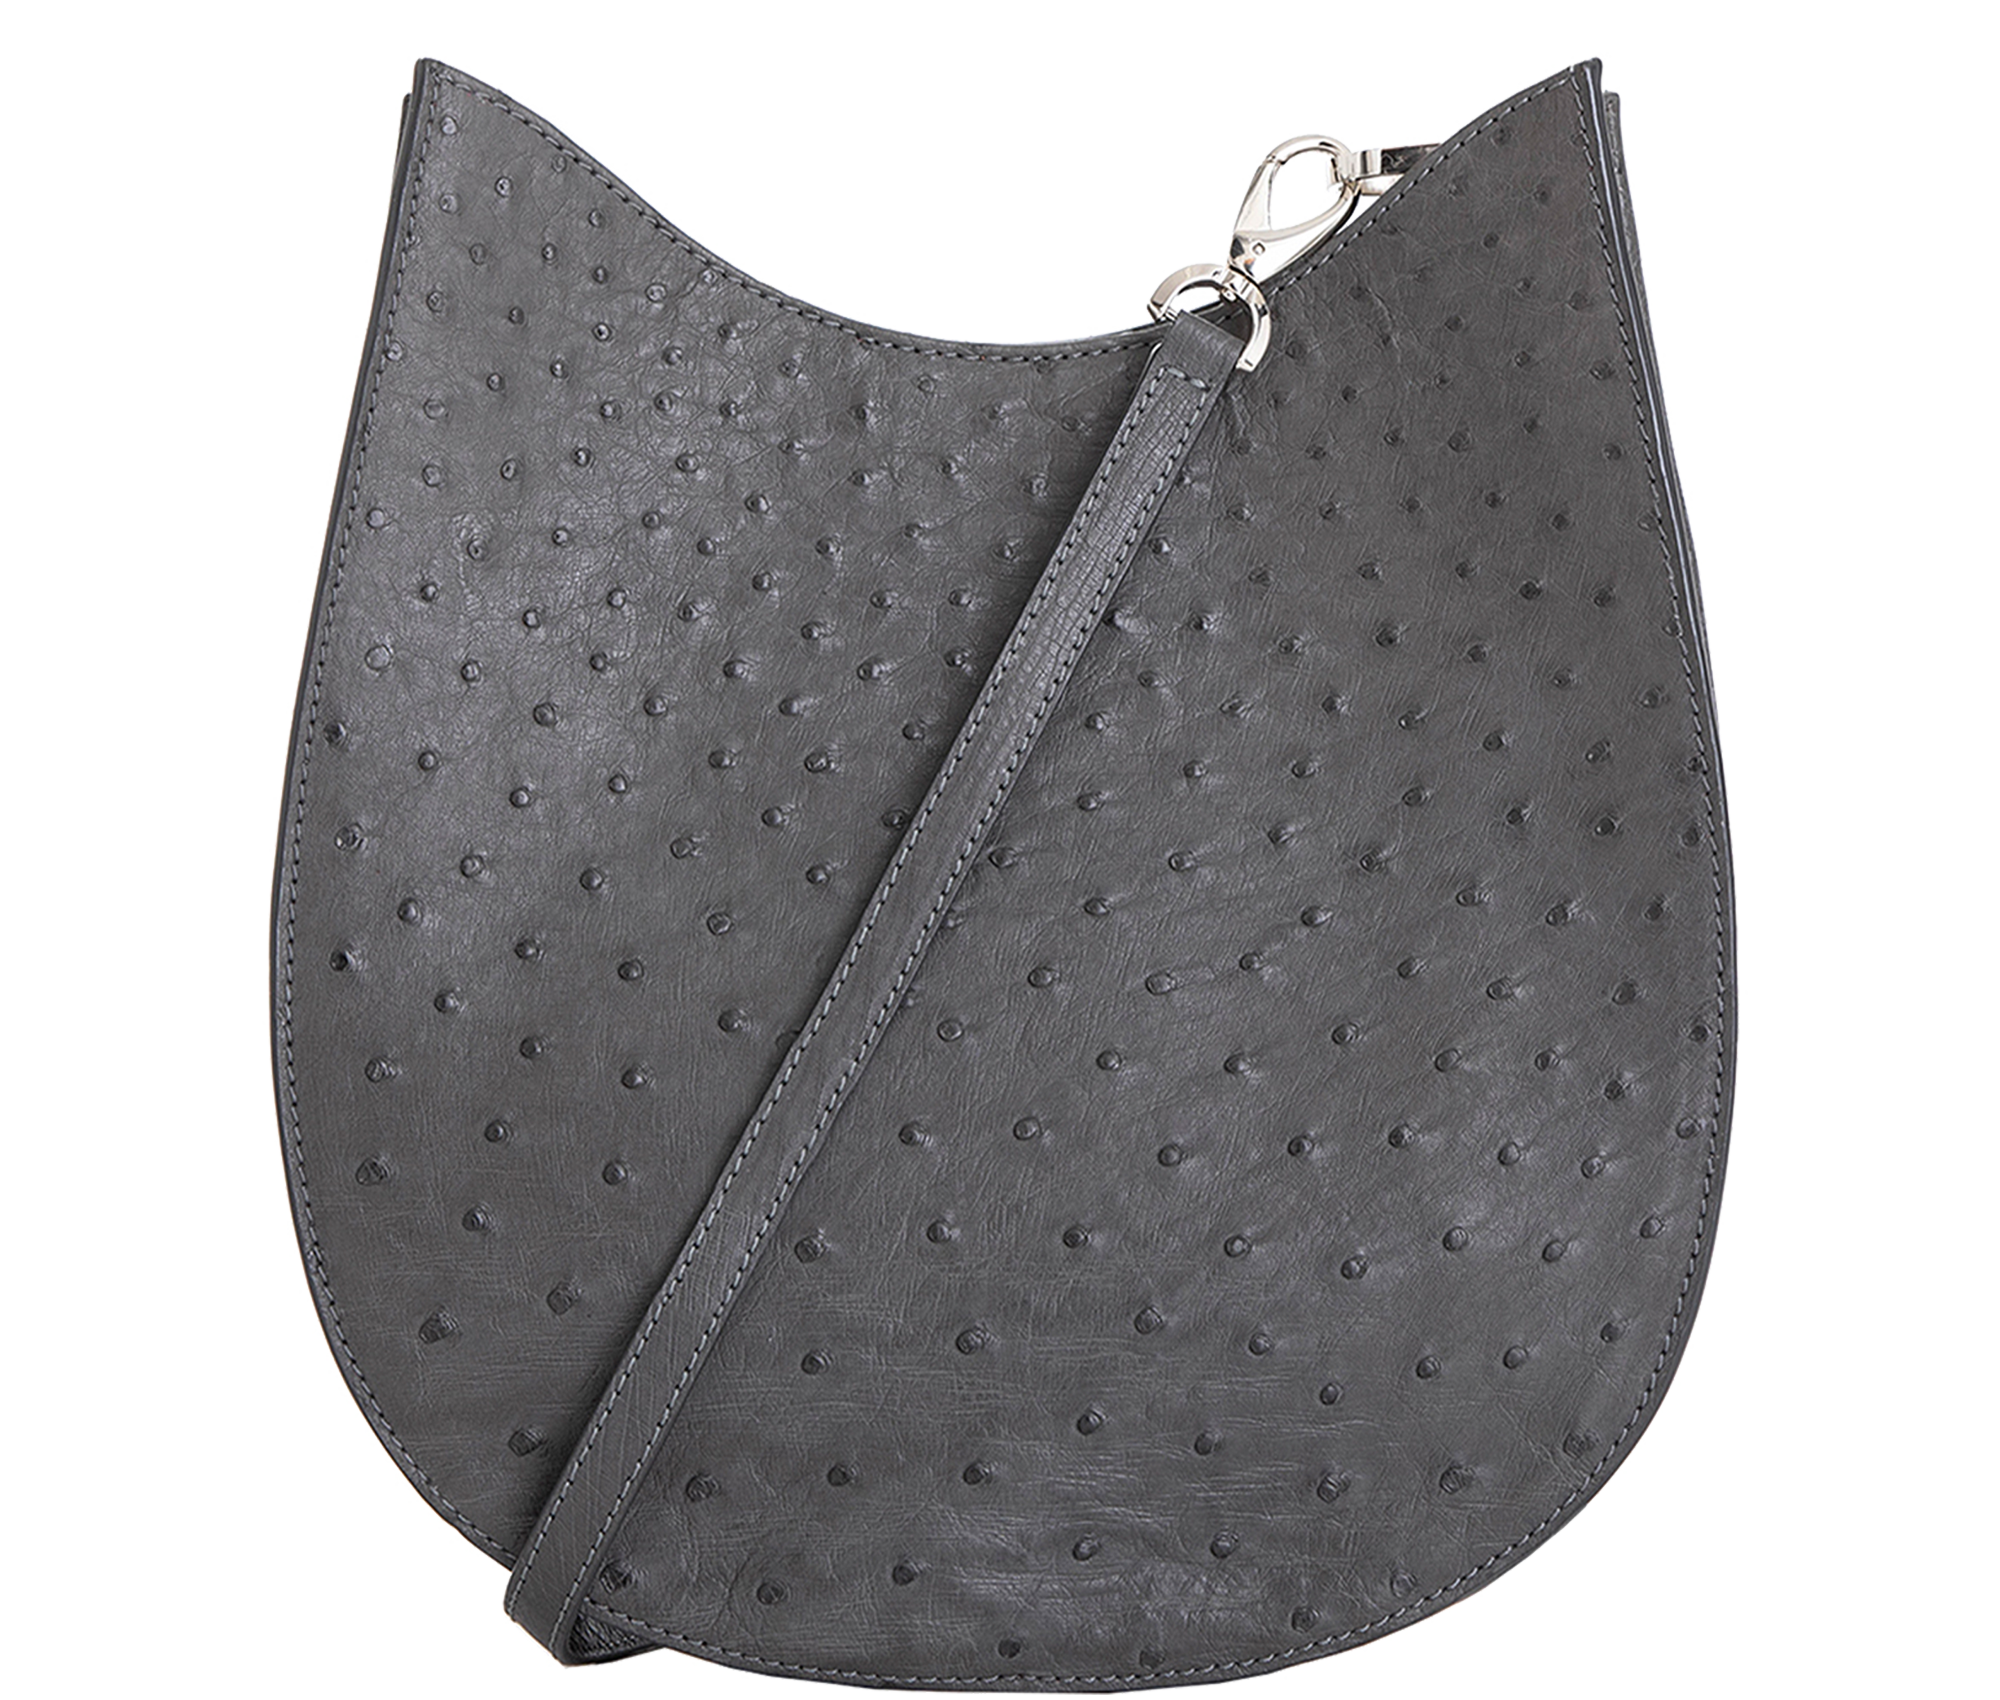 Handbag Grey Saddle Bag